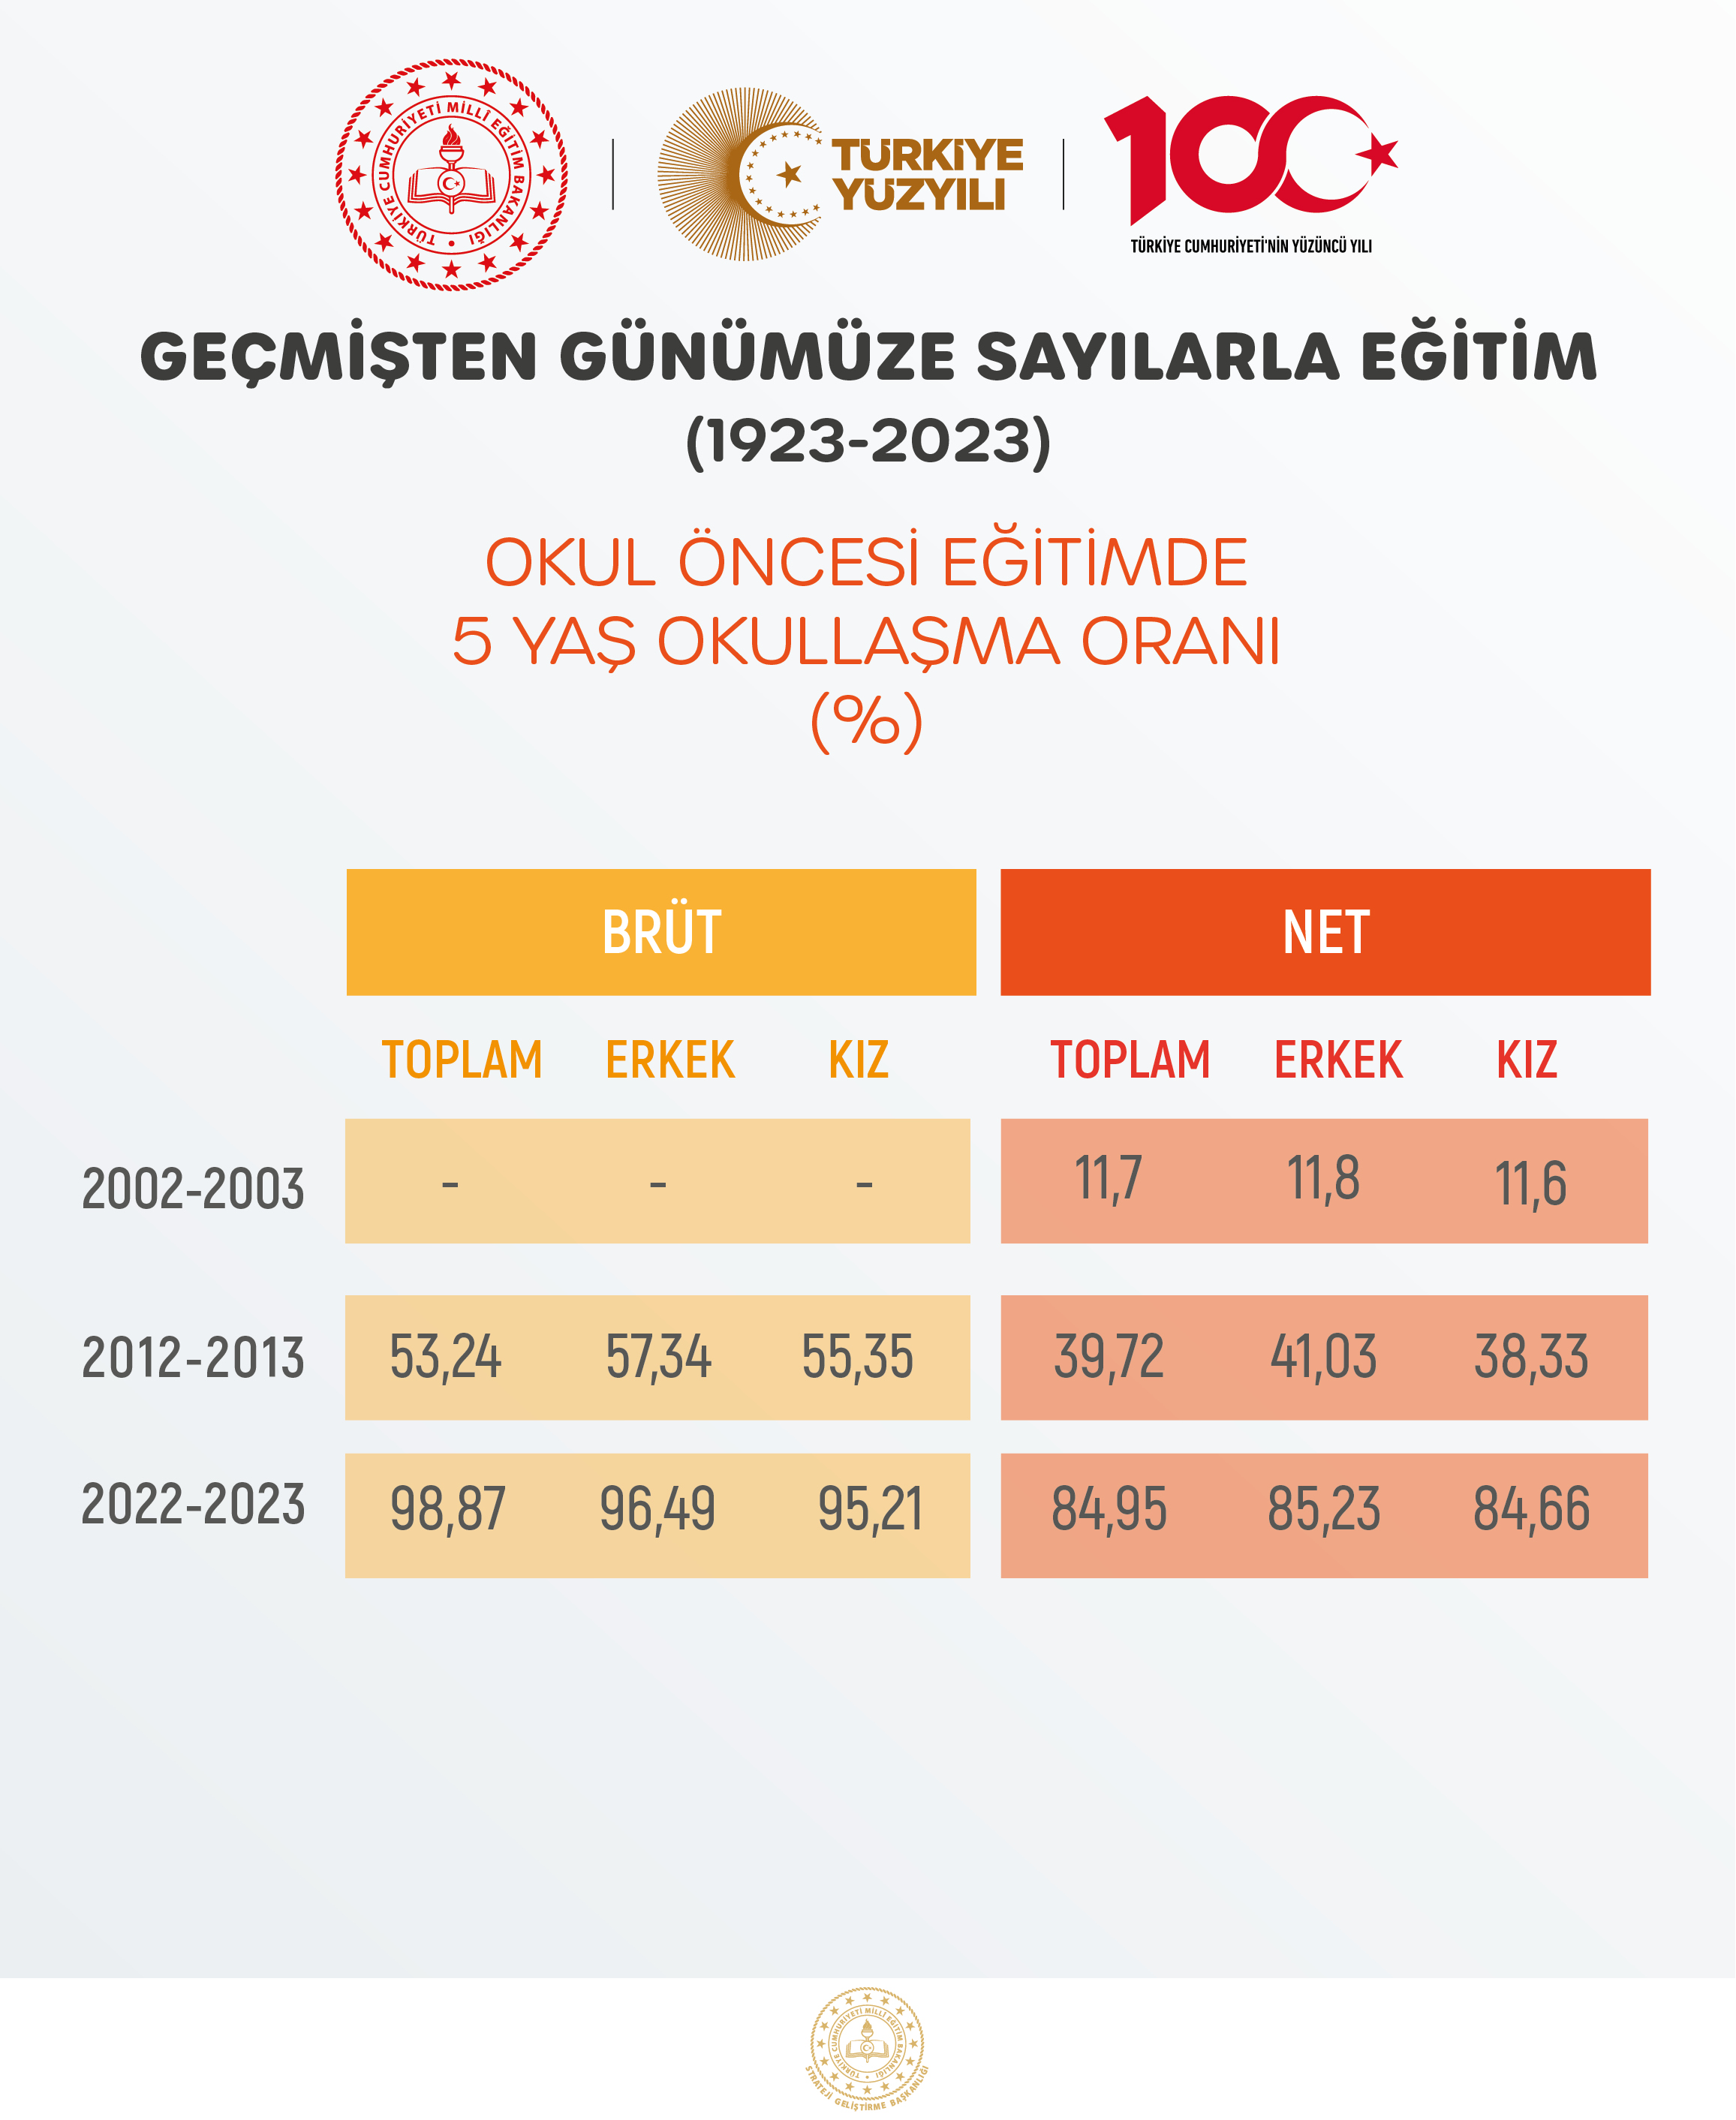 OKUL ÖNCESİ EĞİTİMDE 5 YAŞ OKULLAŞMA ORANI (%)